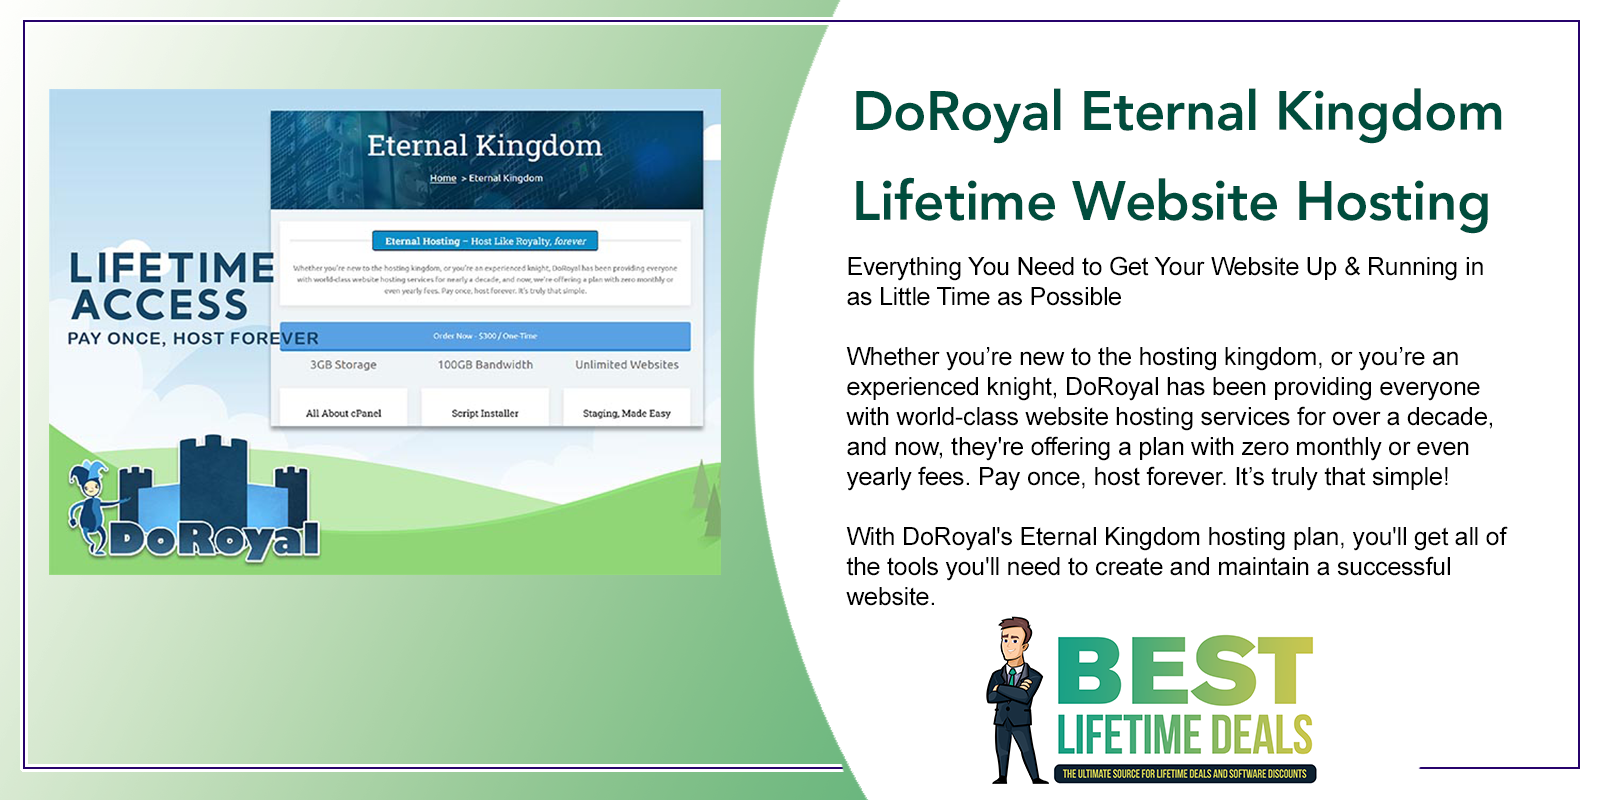 DoRoyal Eternal Kingdom Lifetime Website Hosting Featured Image